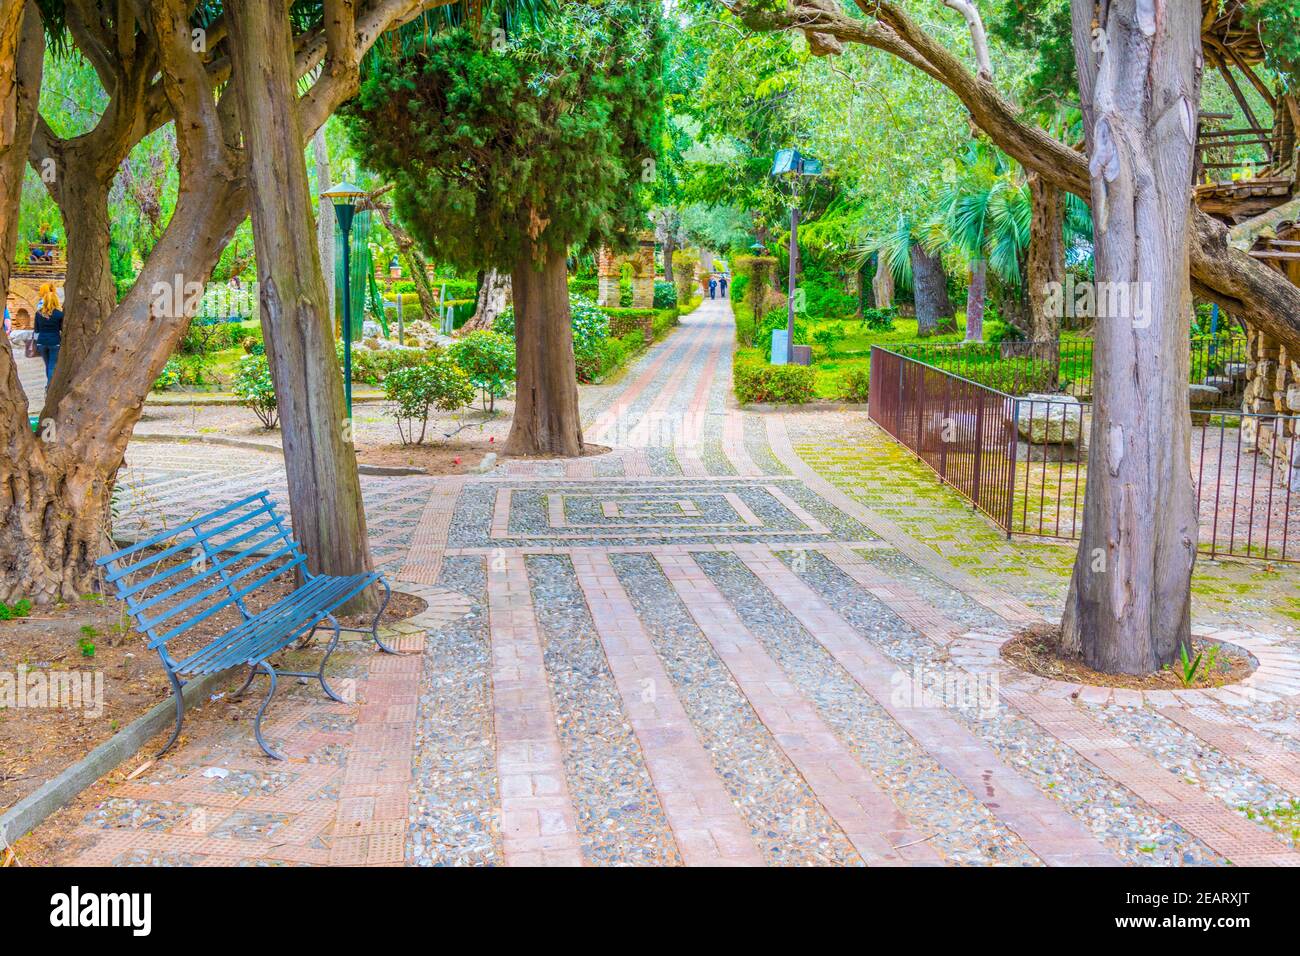 Park Giardini della villa comunale in Taormina, Sicily, Italy Stock Photo